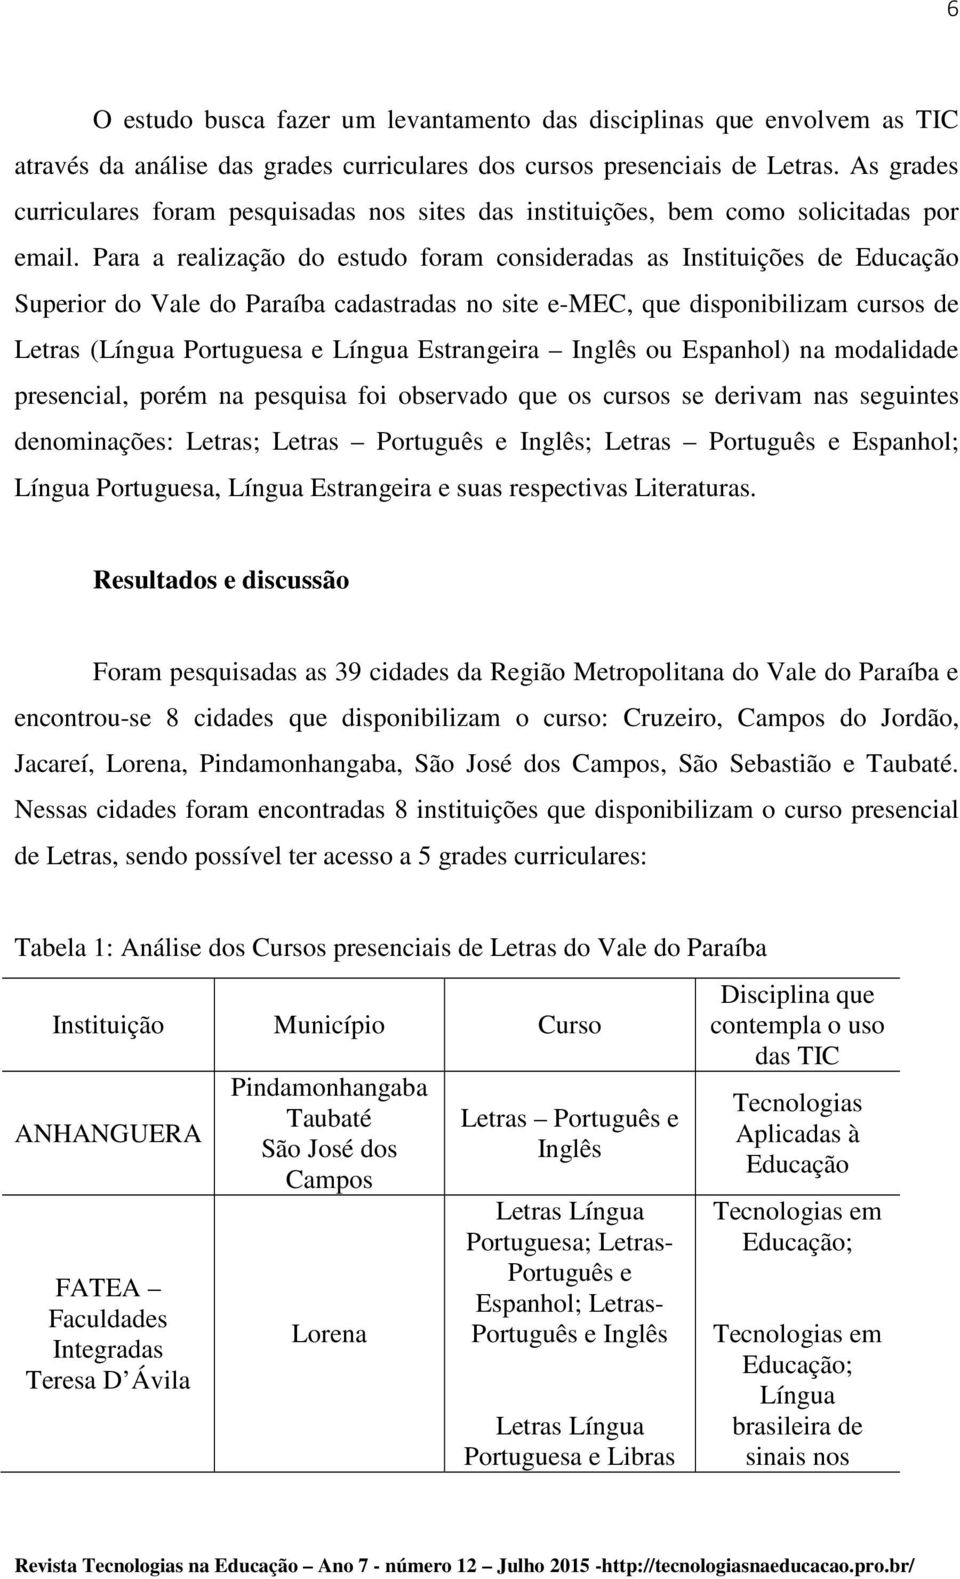 Para a realização do estudo foram consideradas as Instituições de Educação Superior do Vale do Paraíba cadastradas no site e-mec, que disponibilizam cursos de Letras (Língua Portuguesa e Língua